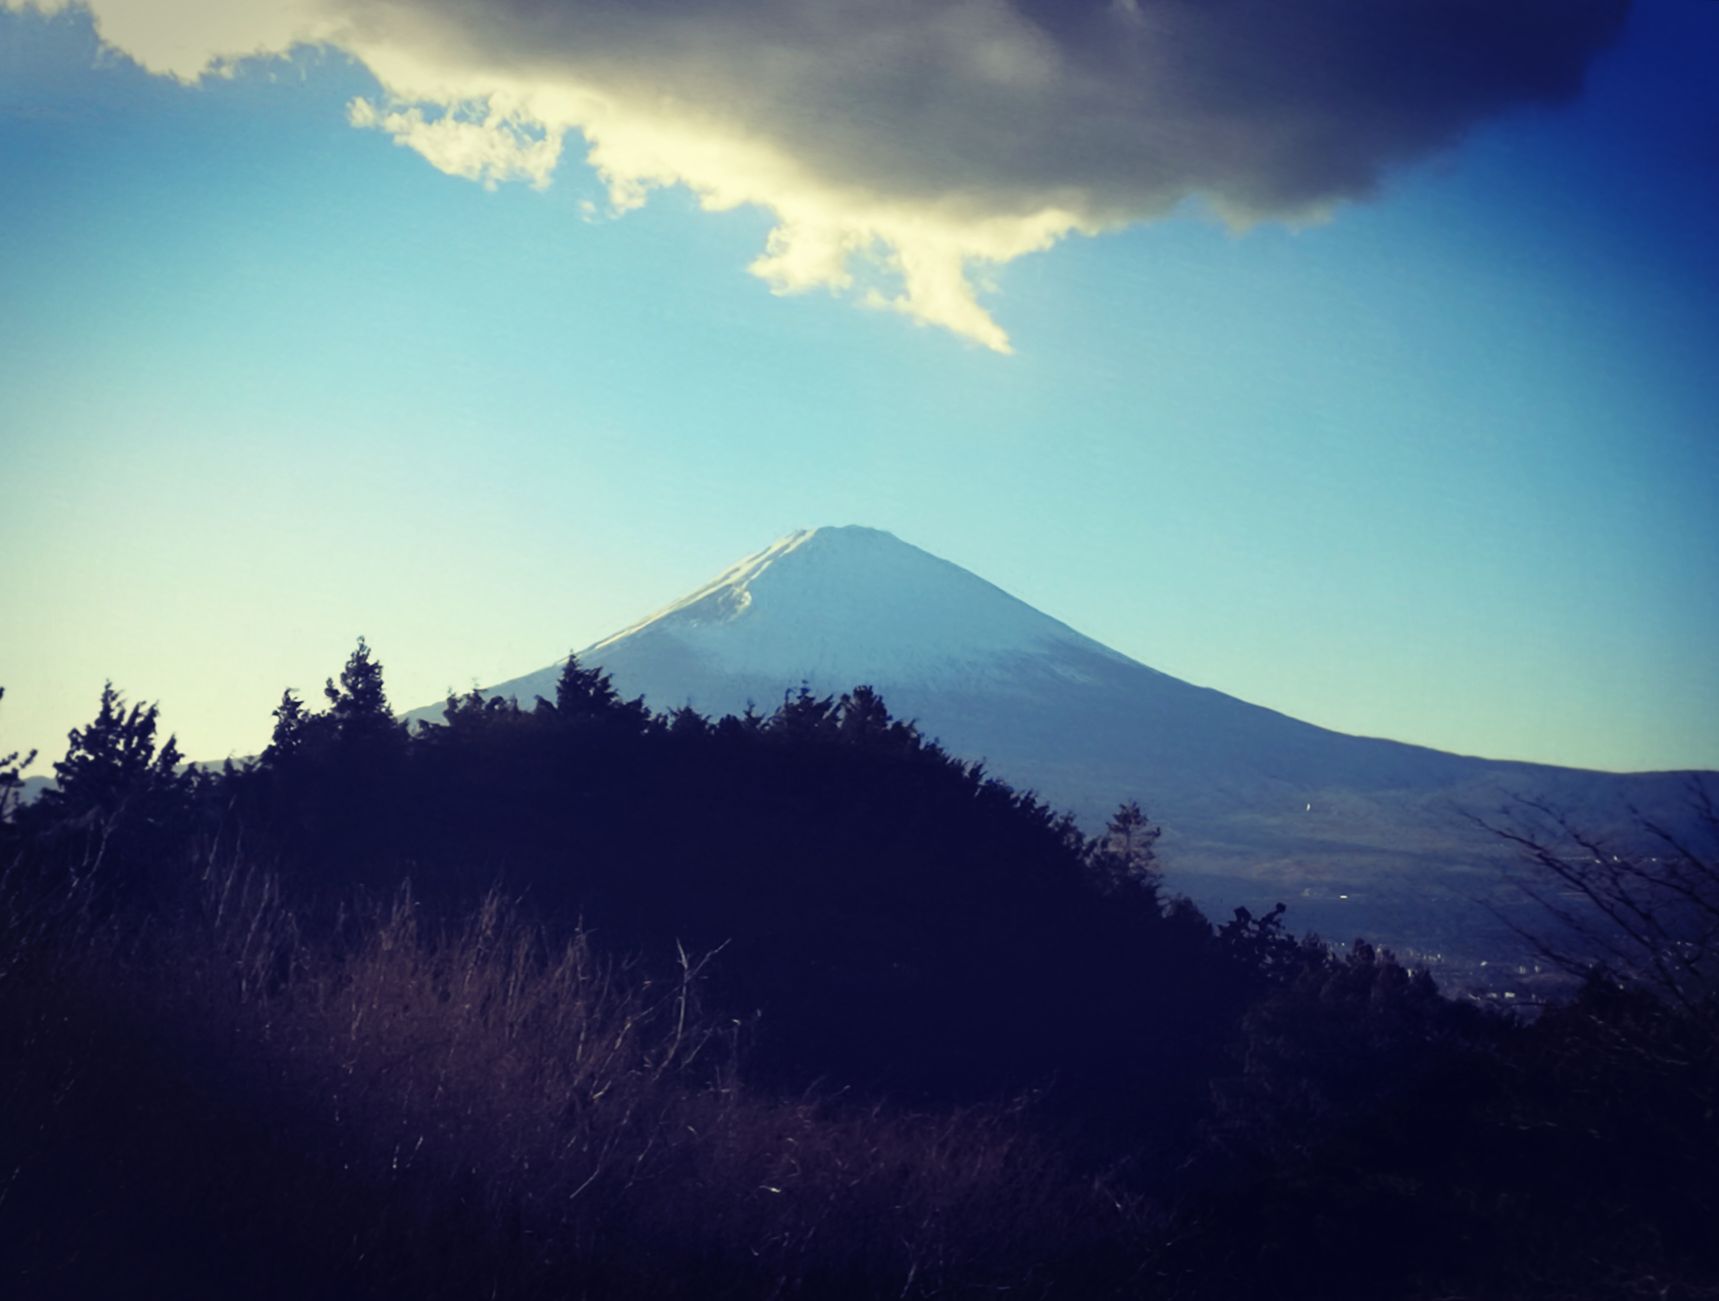 [图文] *** 请欣赏日本富士山顶出现的奇特环绕云 *** [分享] - 科学探索 - 华声论坛